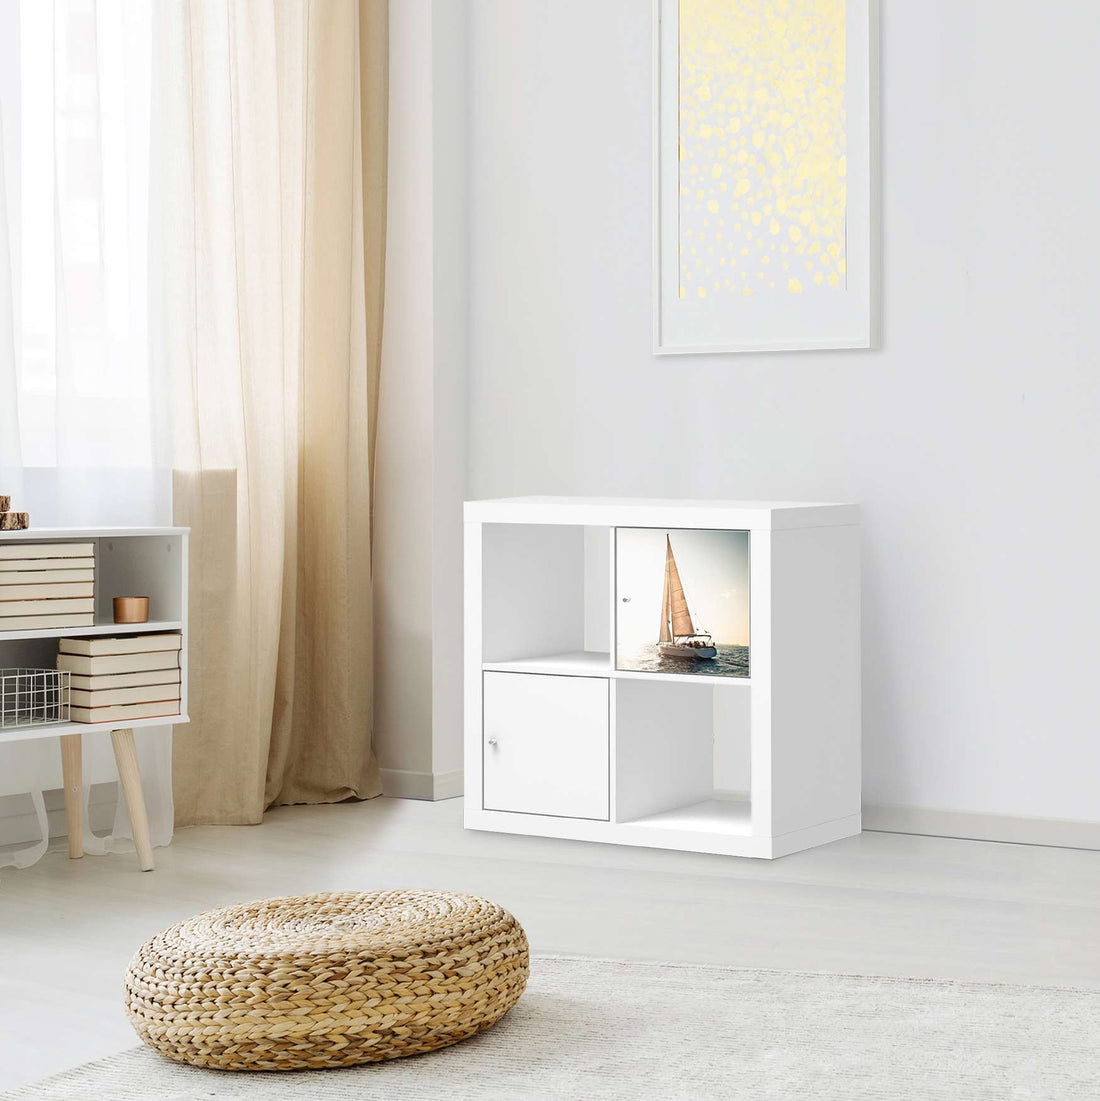 Selbstklebende Folie Freedom - IKEA Kallax Regal 1 Türe - Wohnzimmer